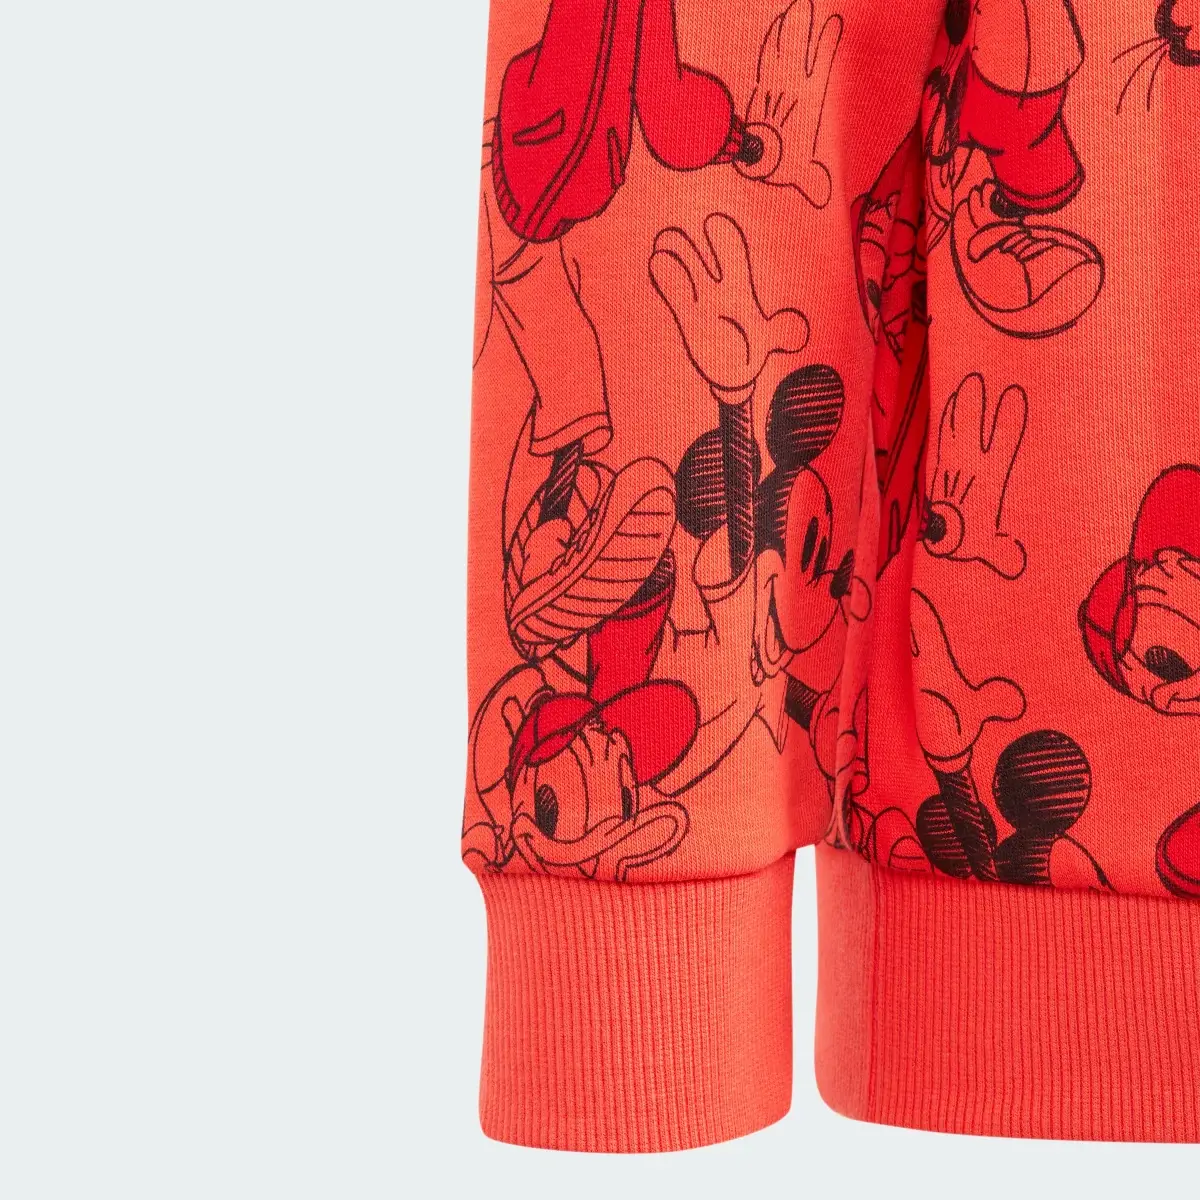 Adidas x Disney Micky Maus Sweatshirt. 3